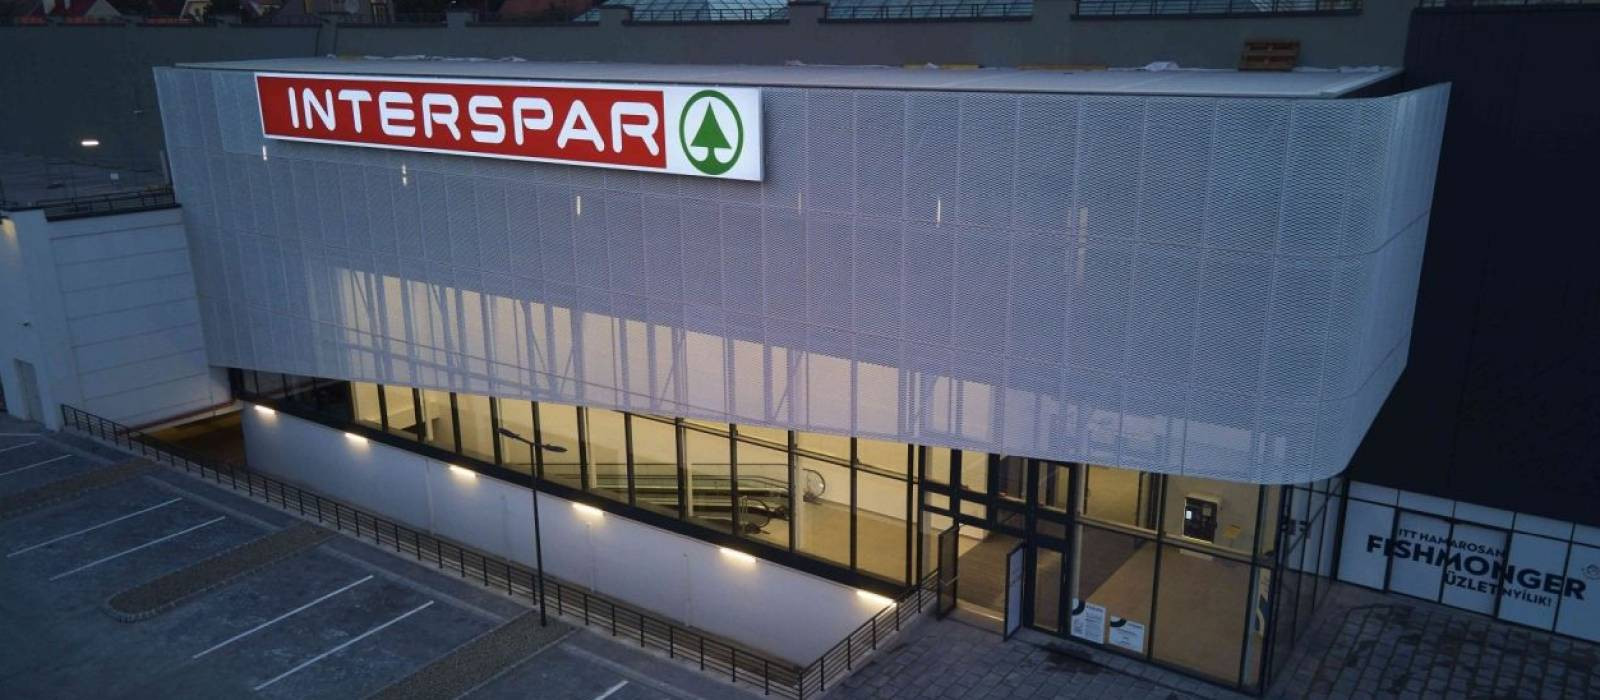 Der INTERSPAR-Hypermarkt im Einkaufszentrum GOBUDA Mall (ehemals Eurocenter) in der Bécsi út ist renoviert worden. 